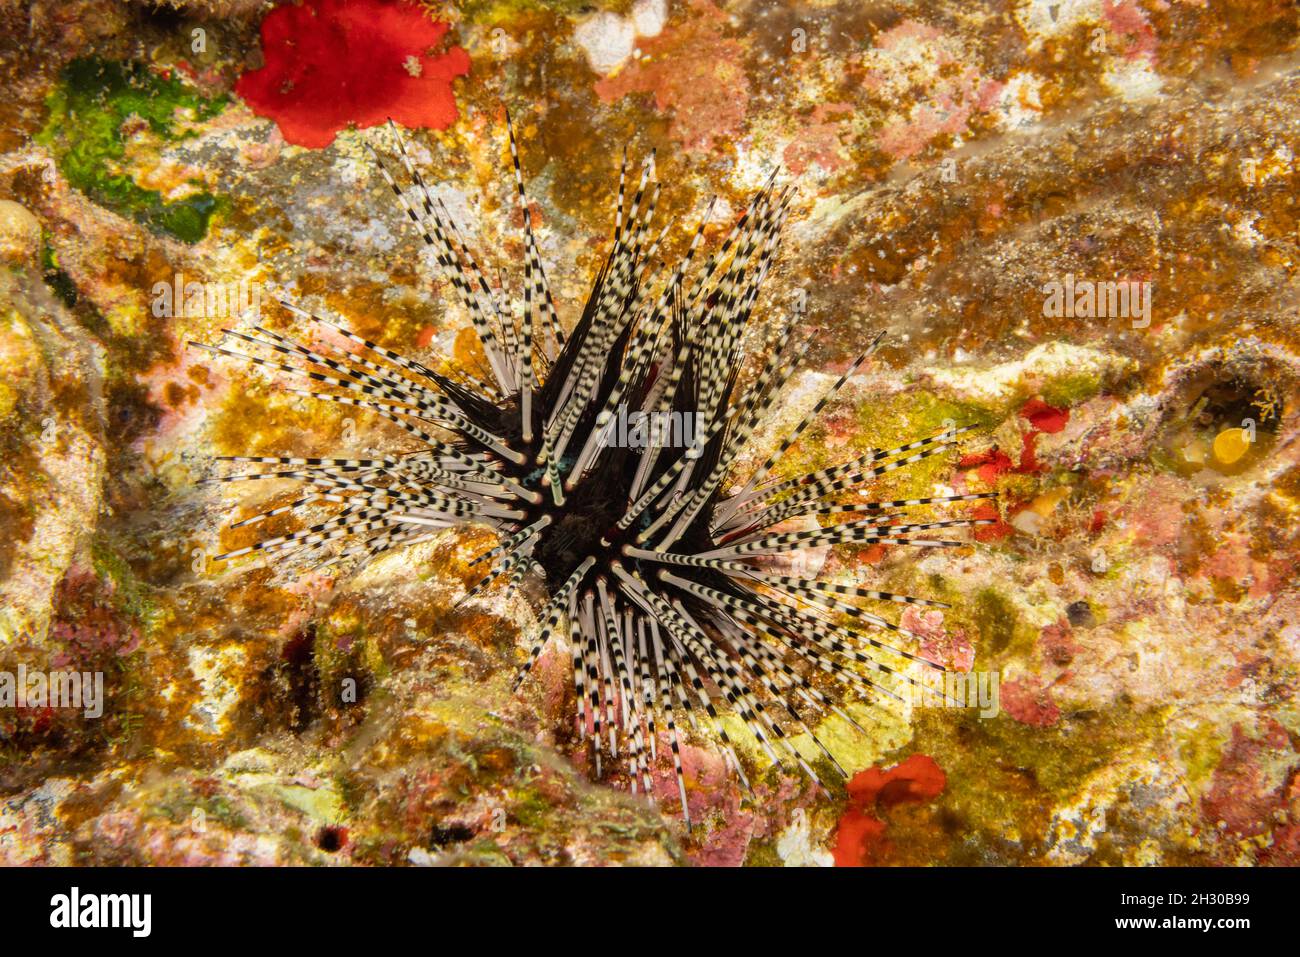 Il riccio di mare a bande, Echinothrix calamaris, è il riccio a lunga lunghezza più comune nelle Hawaii. Foto Stock